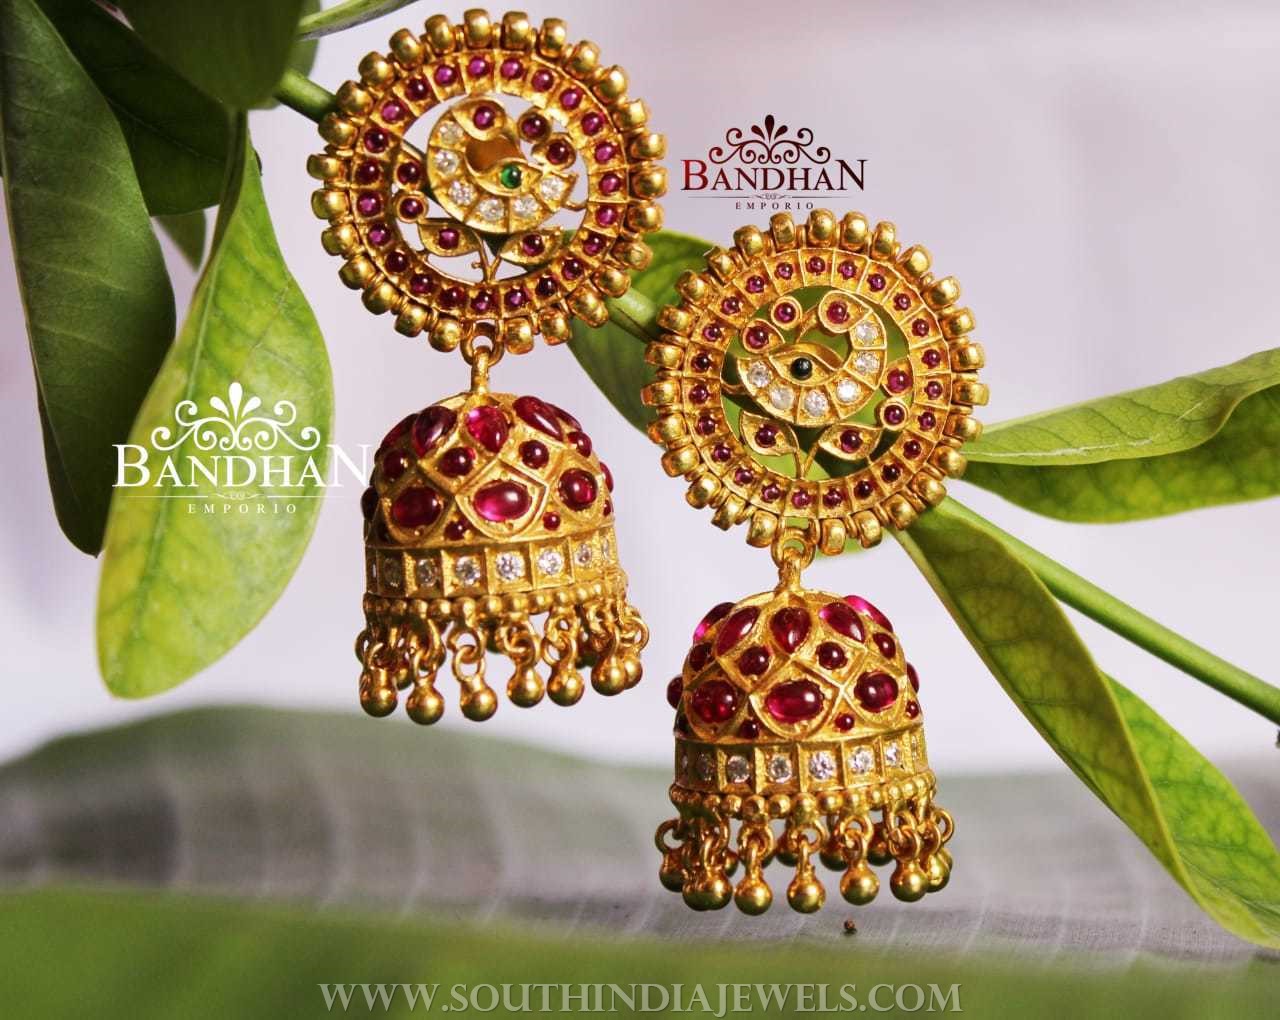 Bandhan Emporio Jewellery Designs